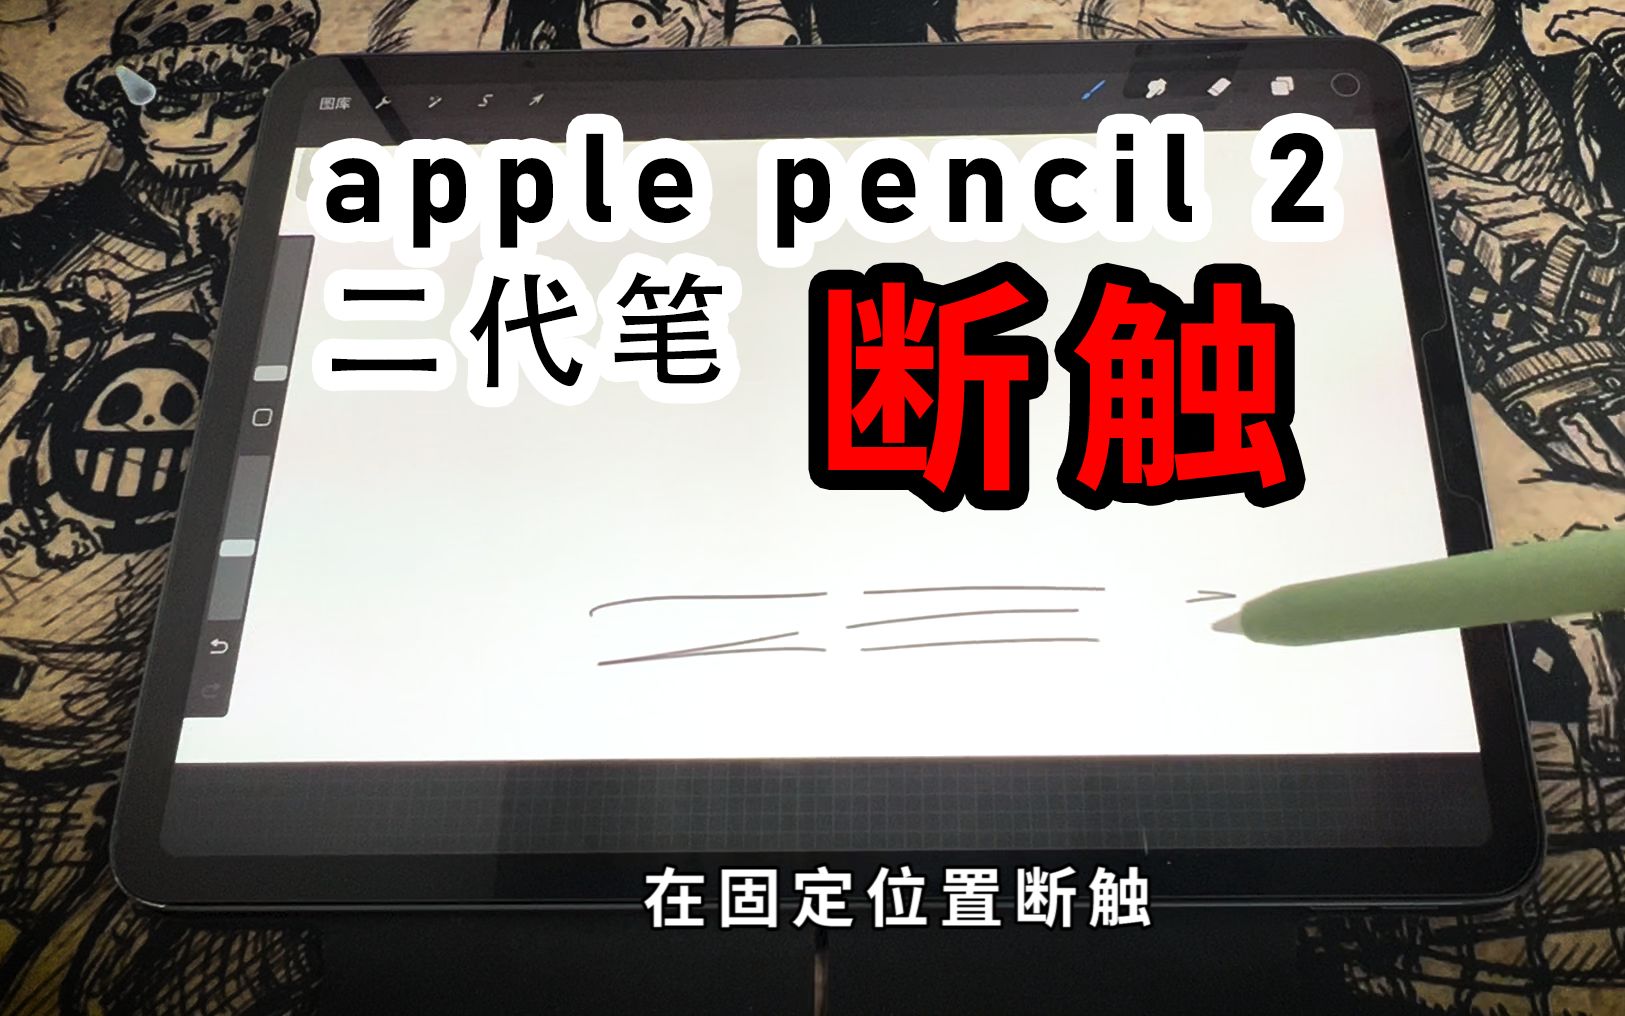 苹果二代笔固定位置断触解决方法（apple pencil 2+ipad pro）求解答 